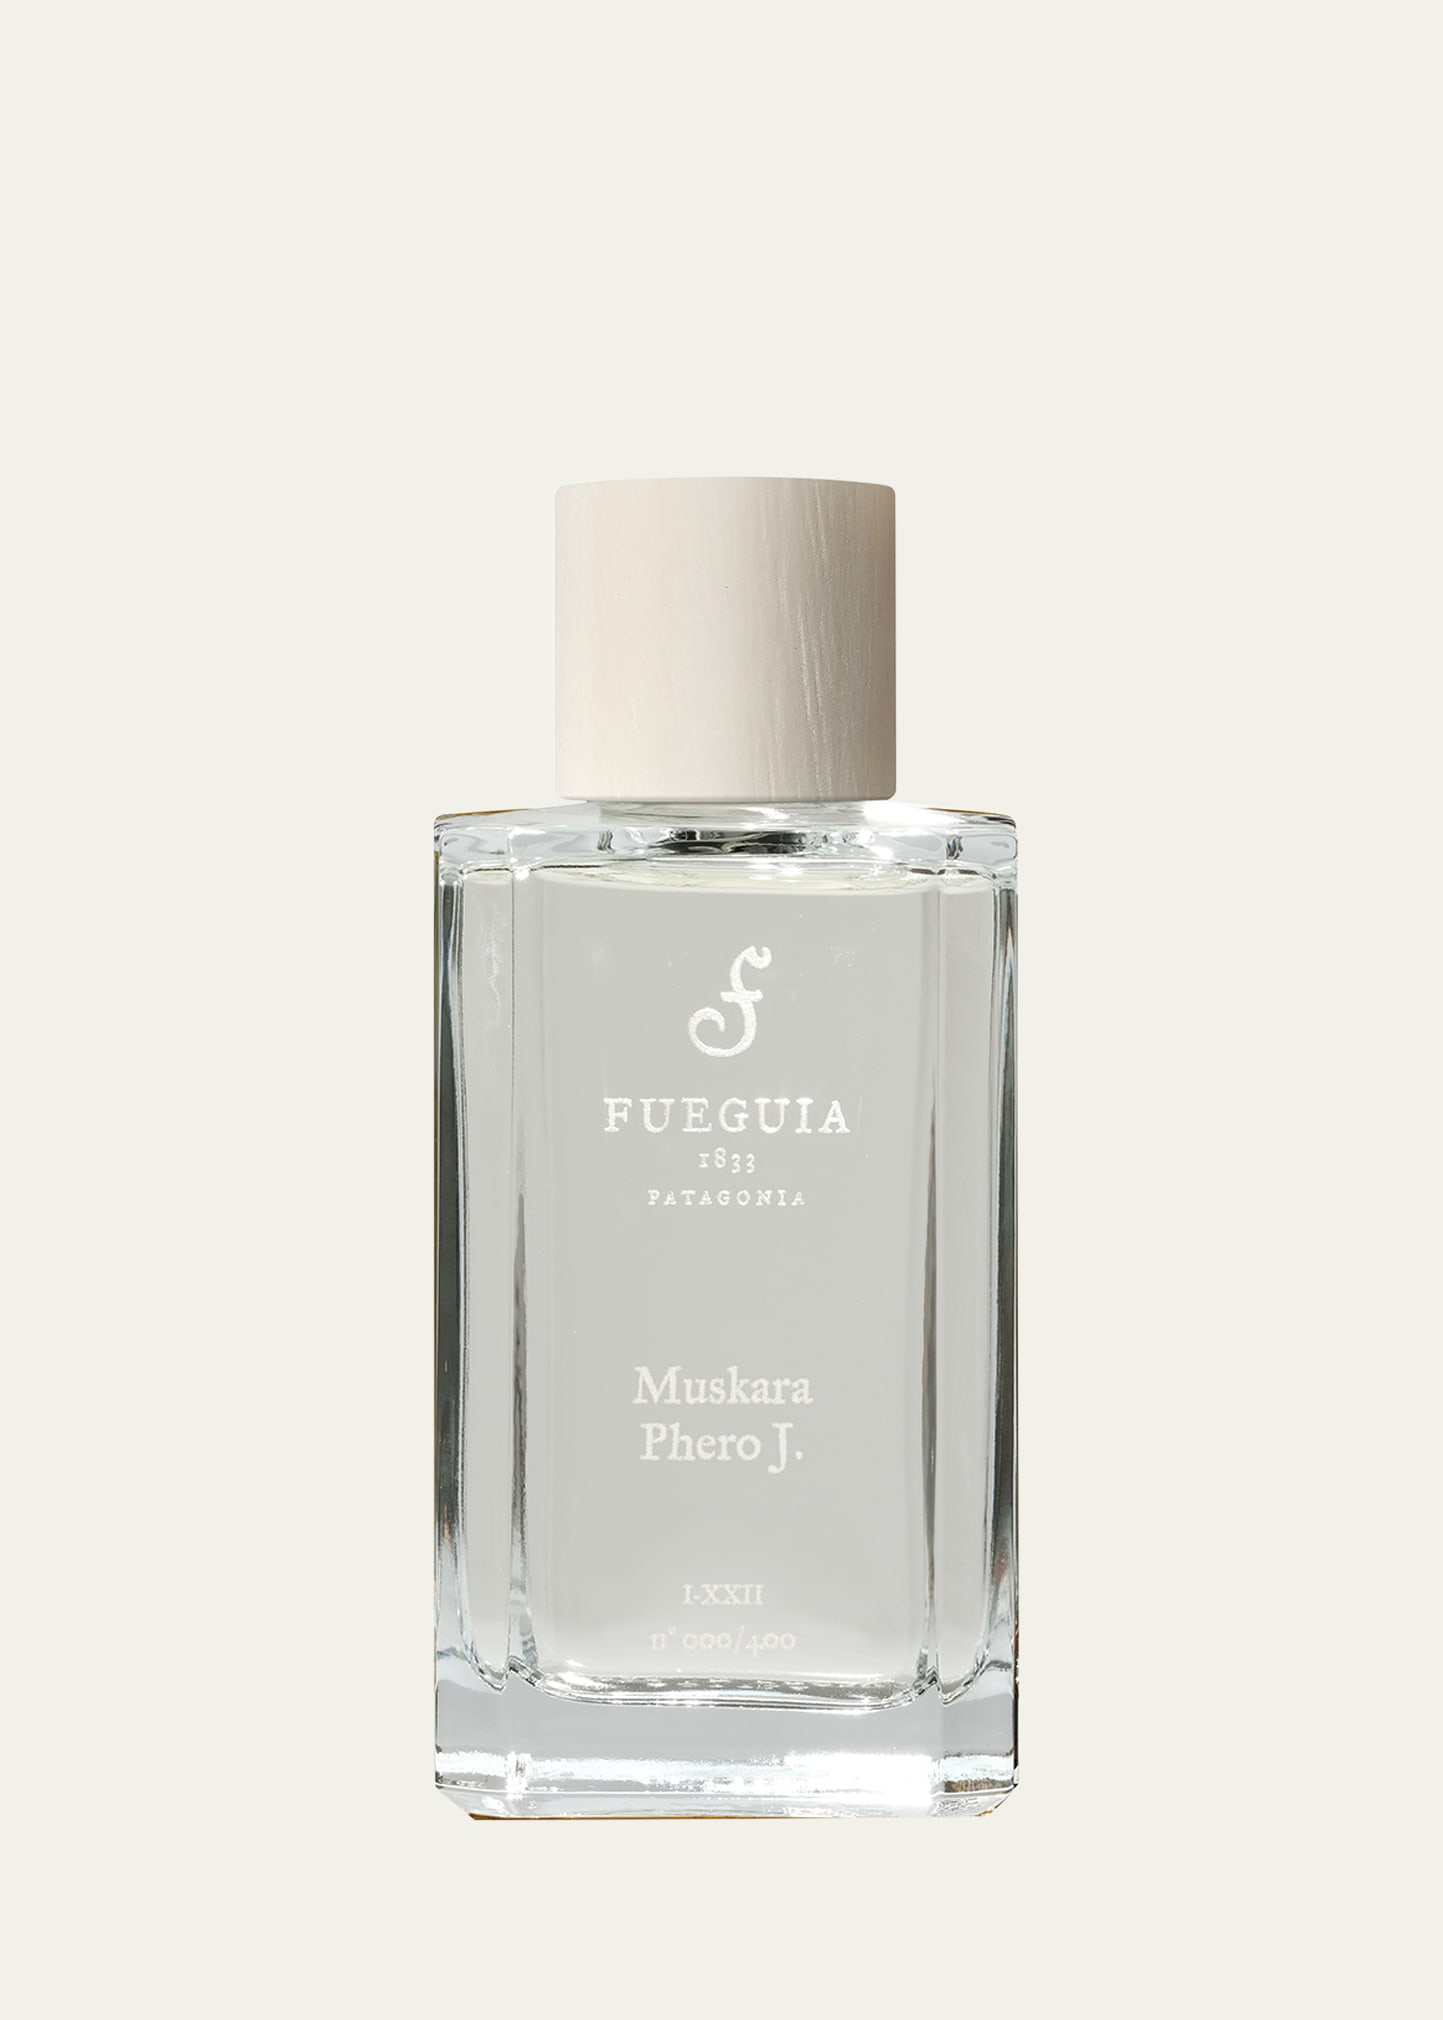 3.4 oz. Muskara Phero J Perfume